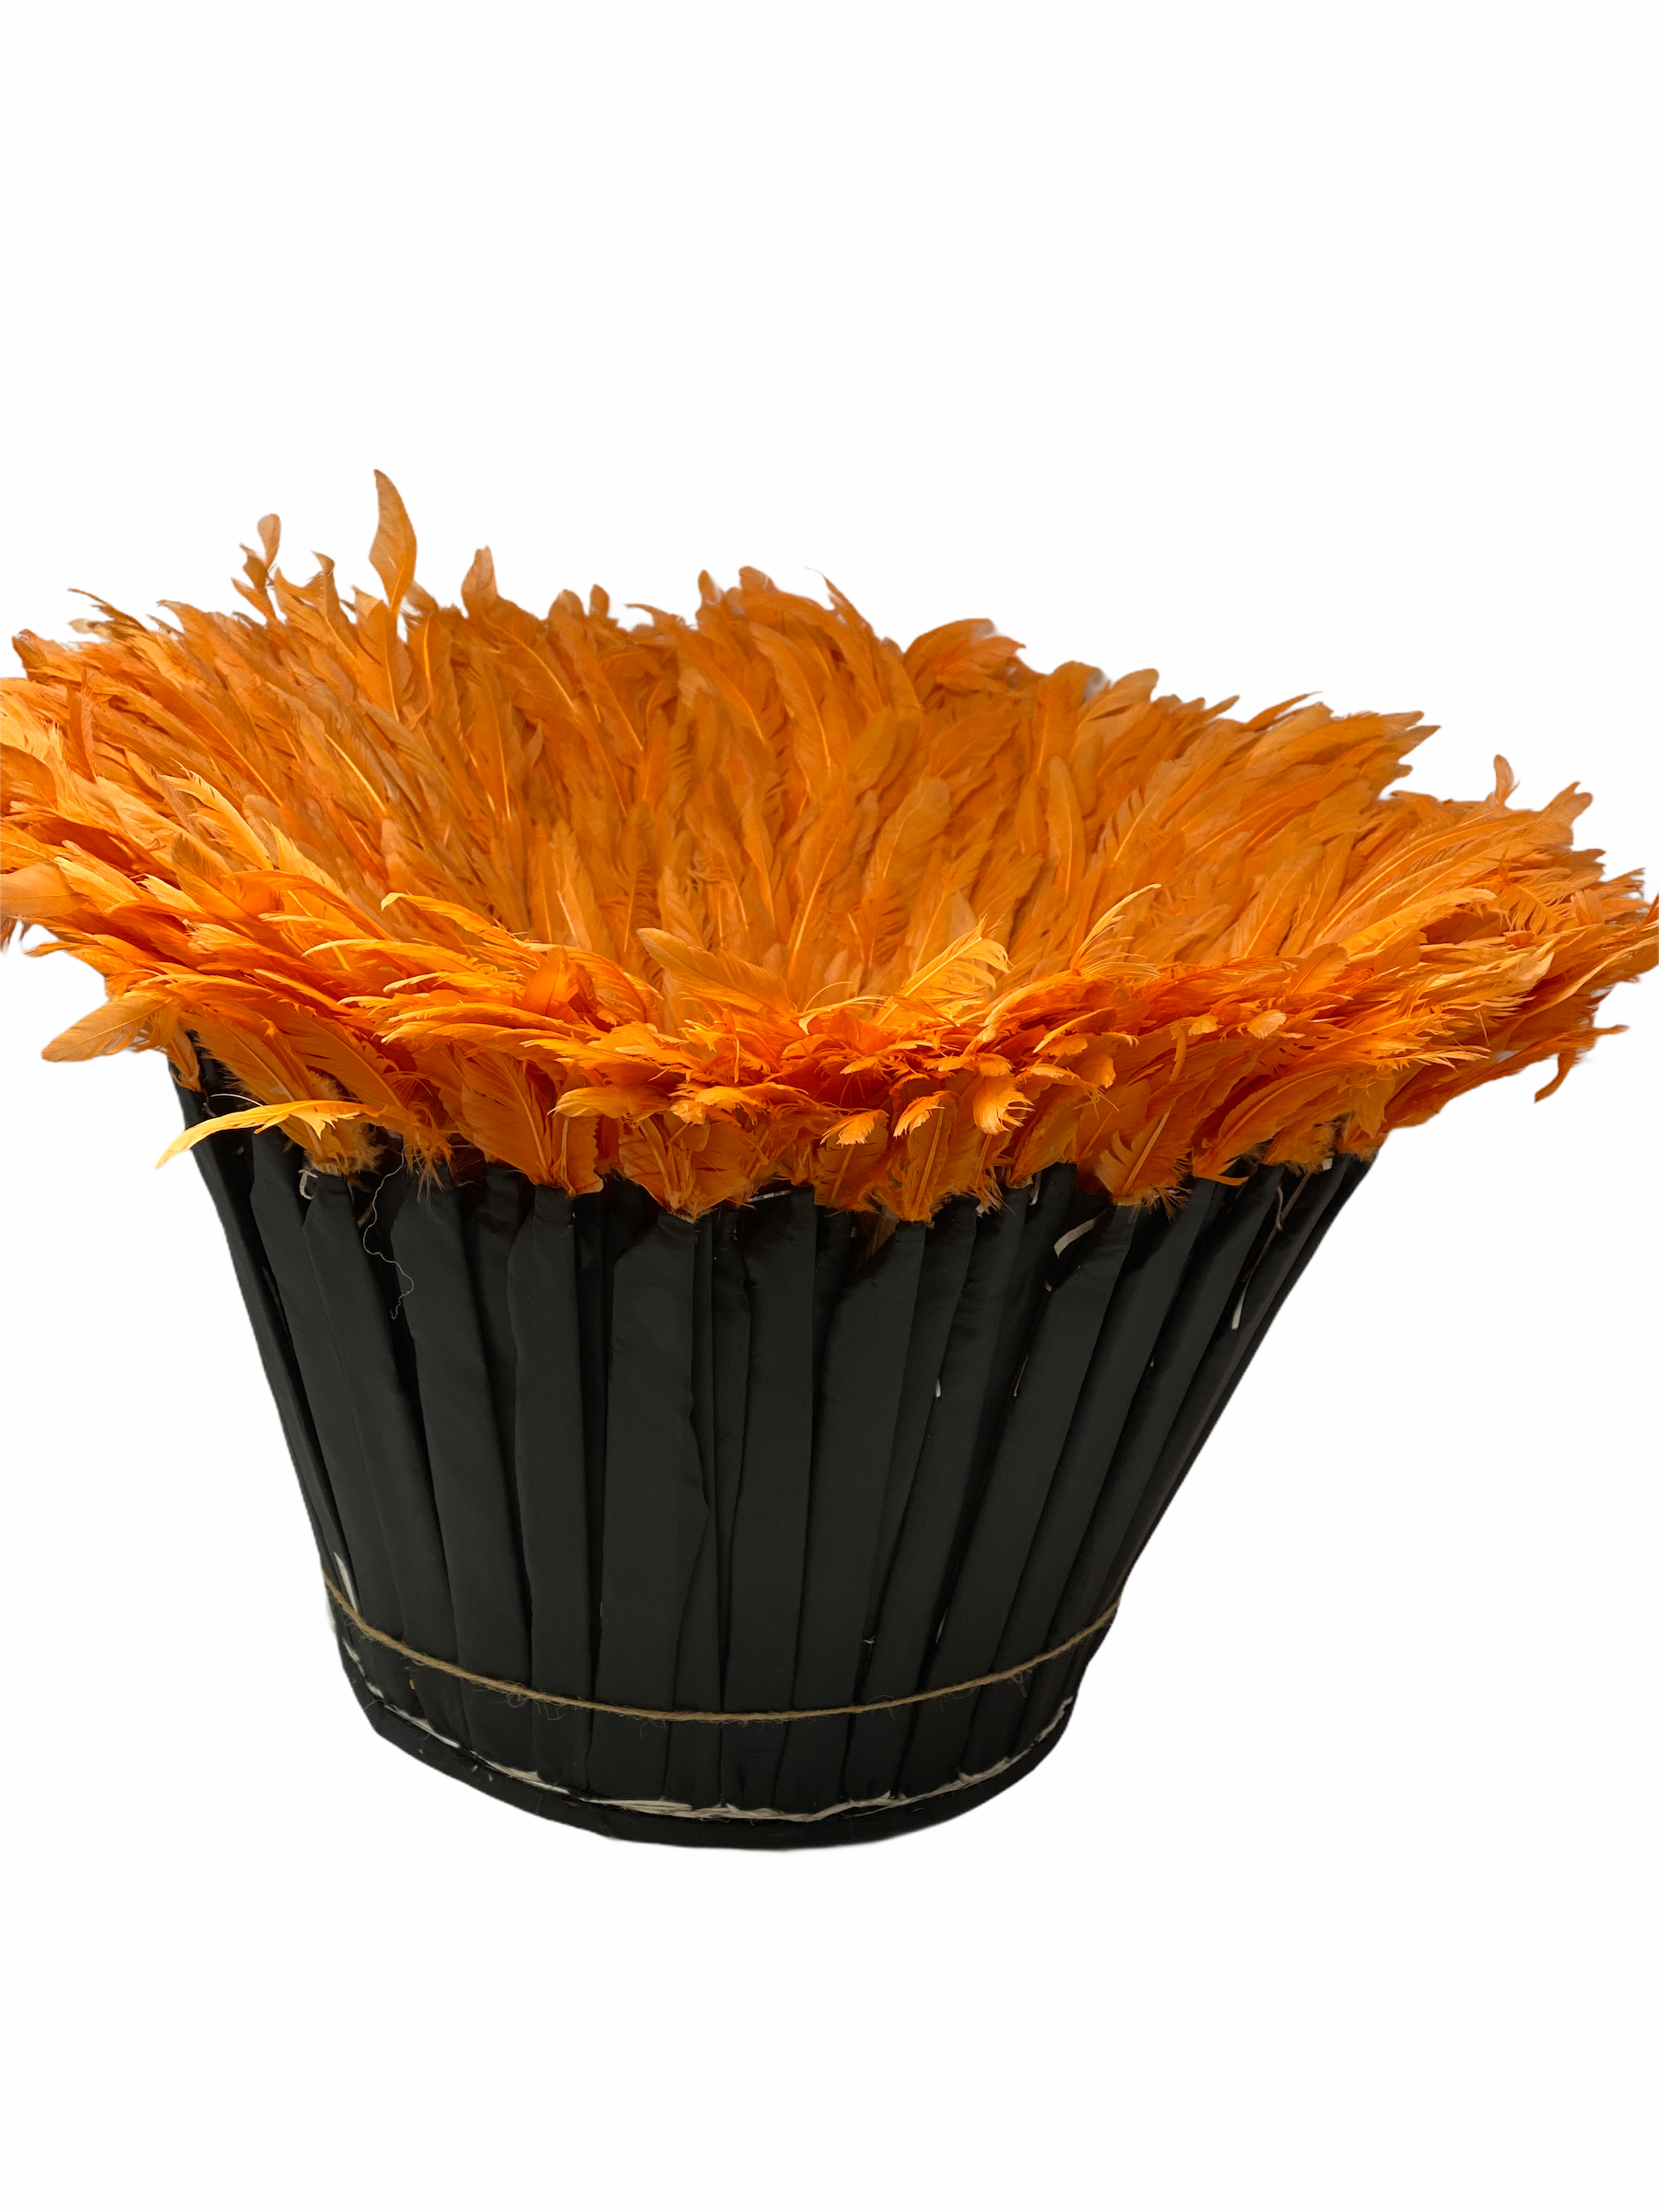 Juju Hat - Orange feathers - 70cm